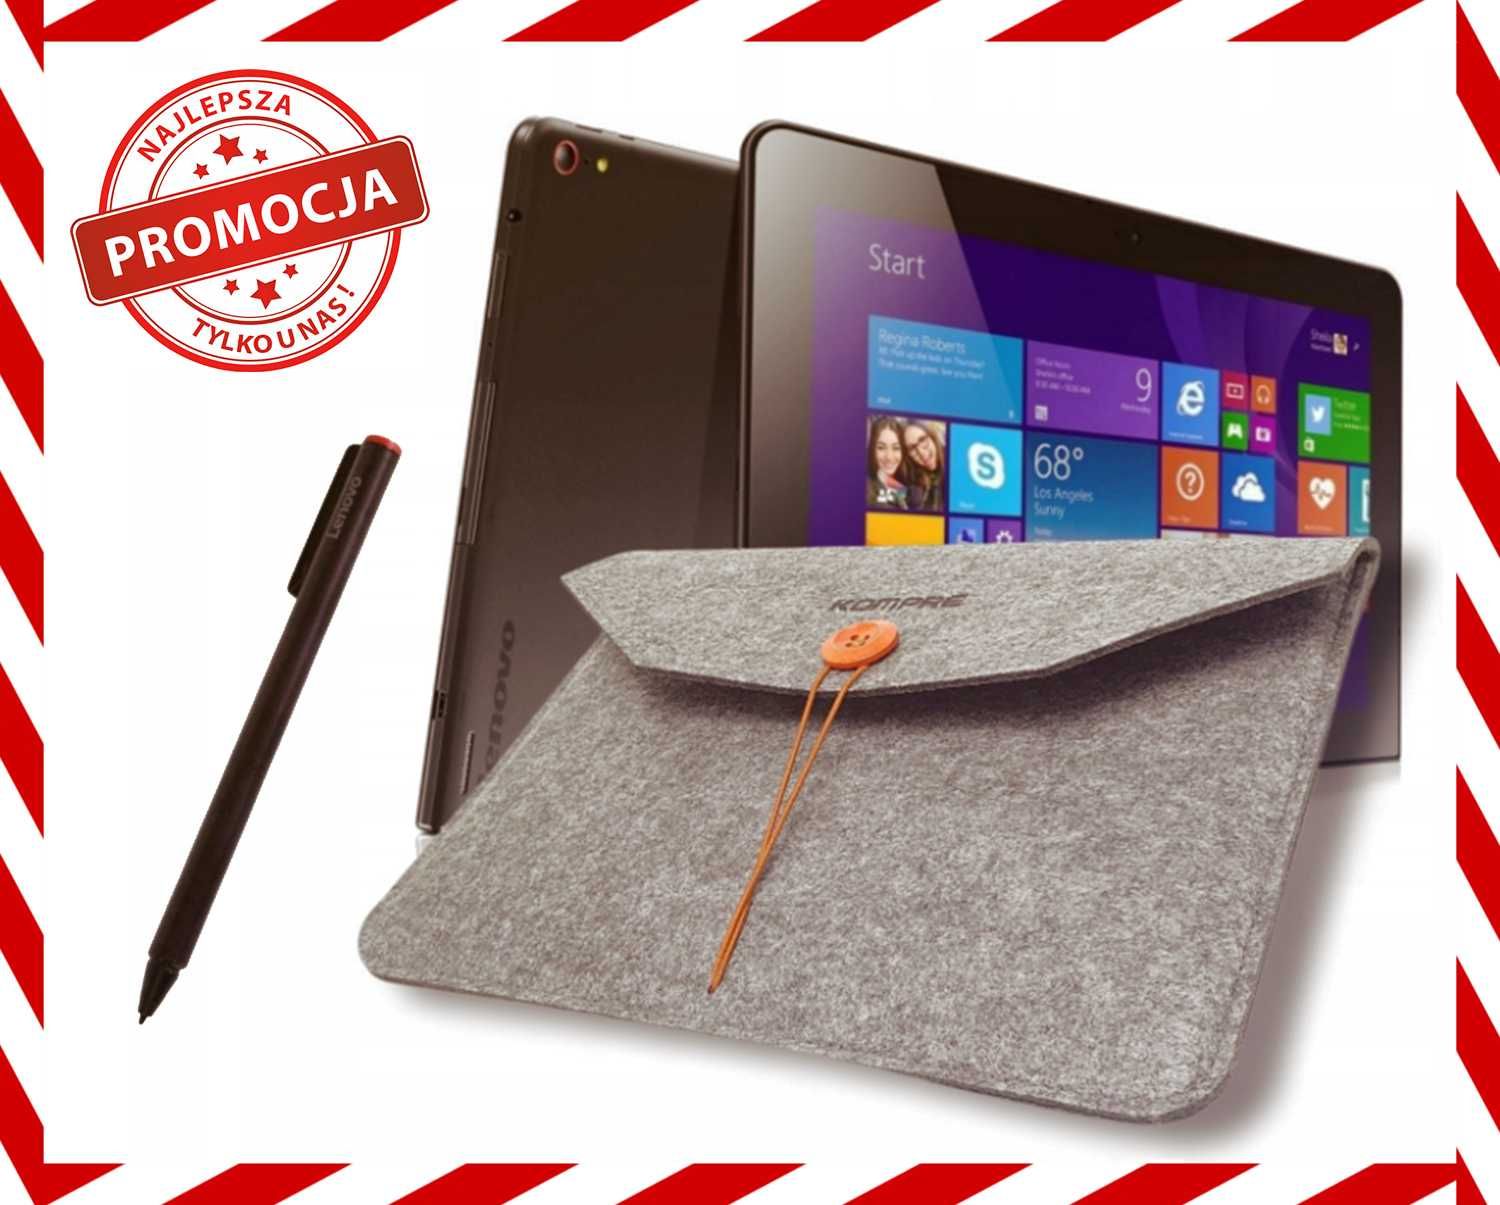 Tablet Lenovo ThinkPad 10 4gb HDMI WiFi Rysik (ZESTAW XXL) *OKAZJA*